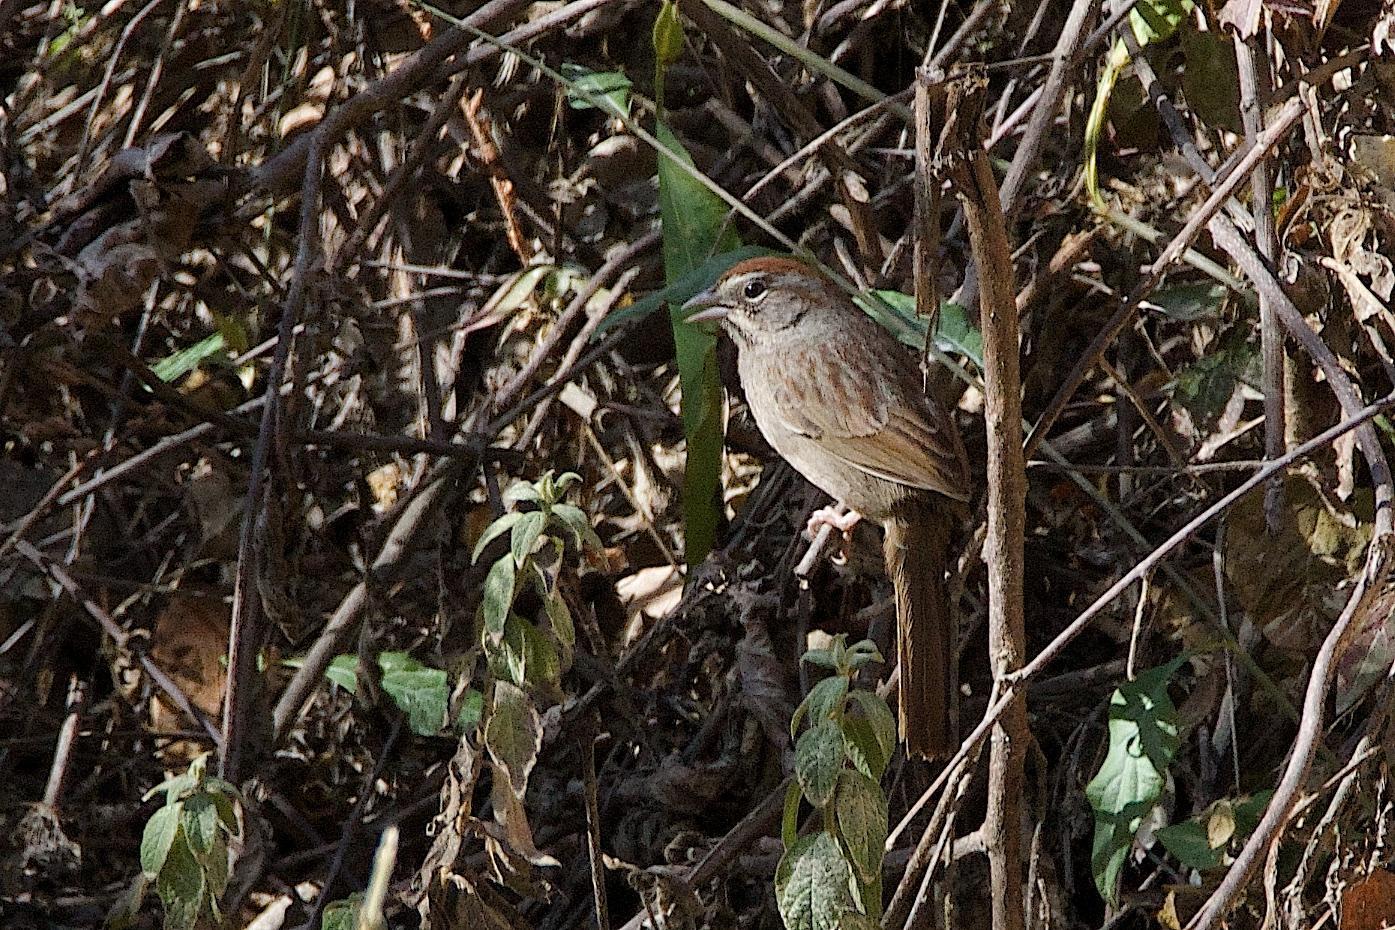 Oaxaca Sparrow Photo by Gerald Hoekstra